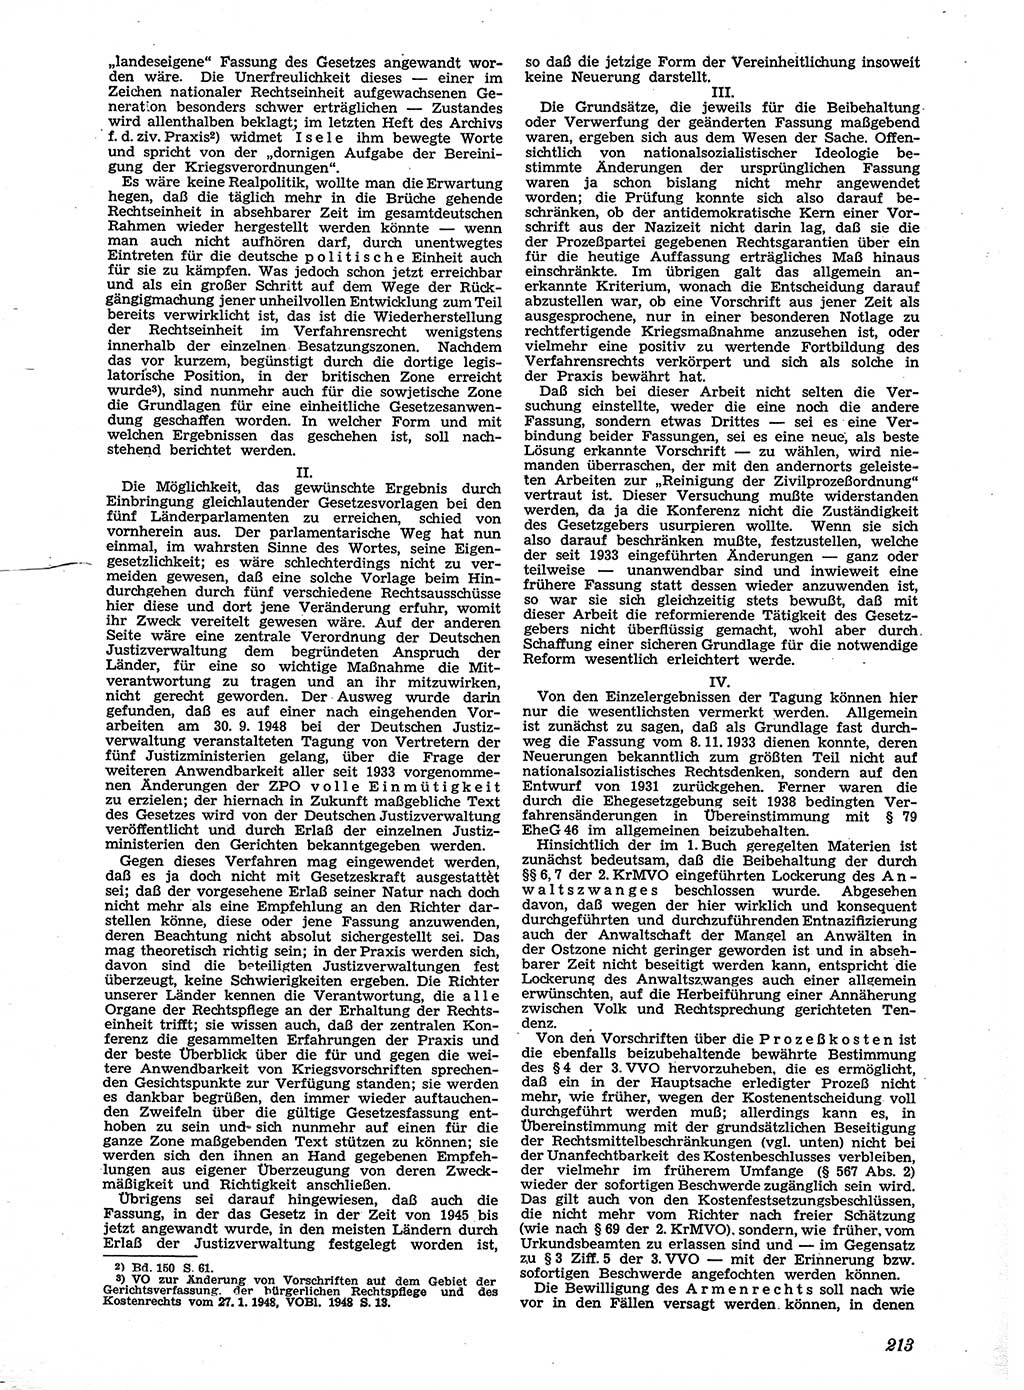 Neue Justiz (NJ), Zeitschrift für Recht und Rechtswissenschaft [Sowjetische Besatzungszone (SBZ) Deutschland], 2. Jahrgang 1948, Seite 213 (NJ SBZ Dtl. 1948, S. 213)